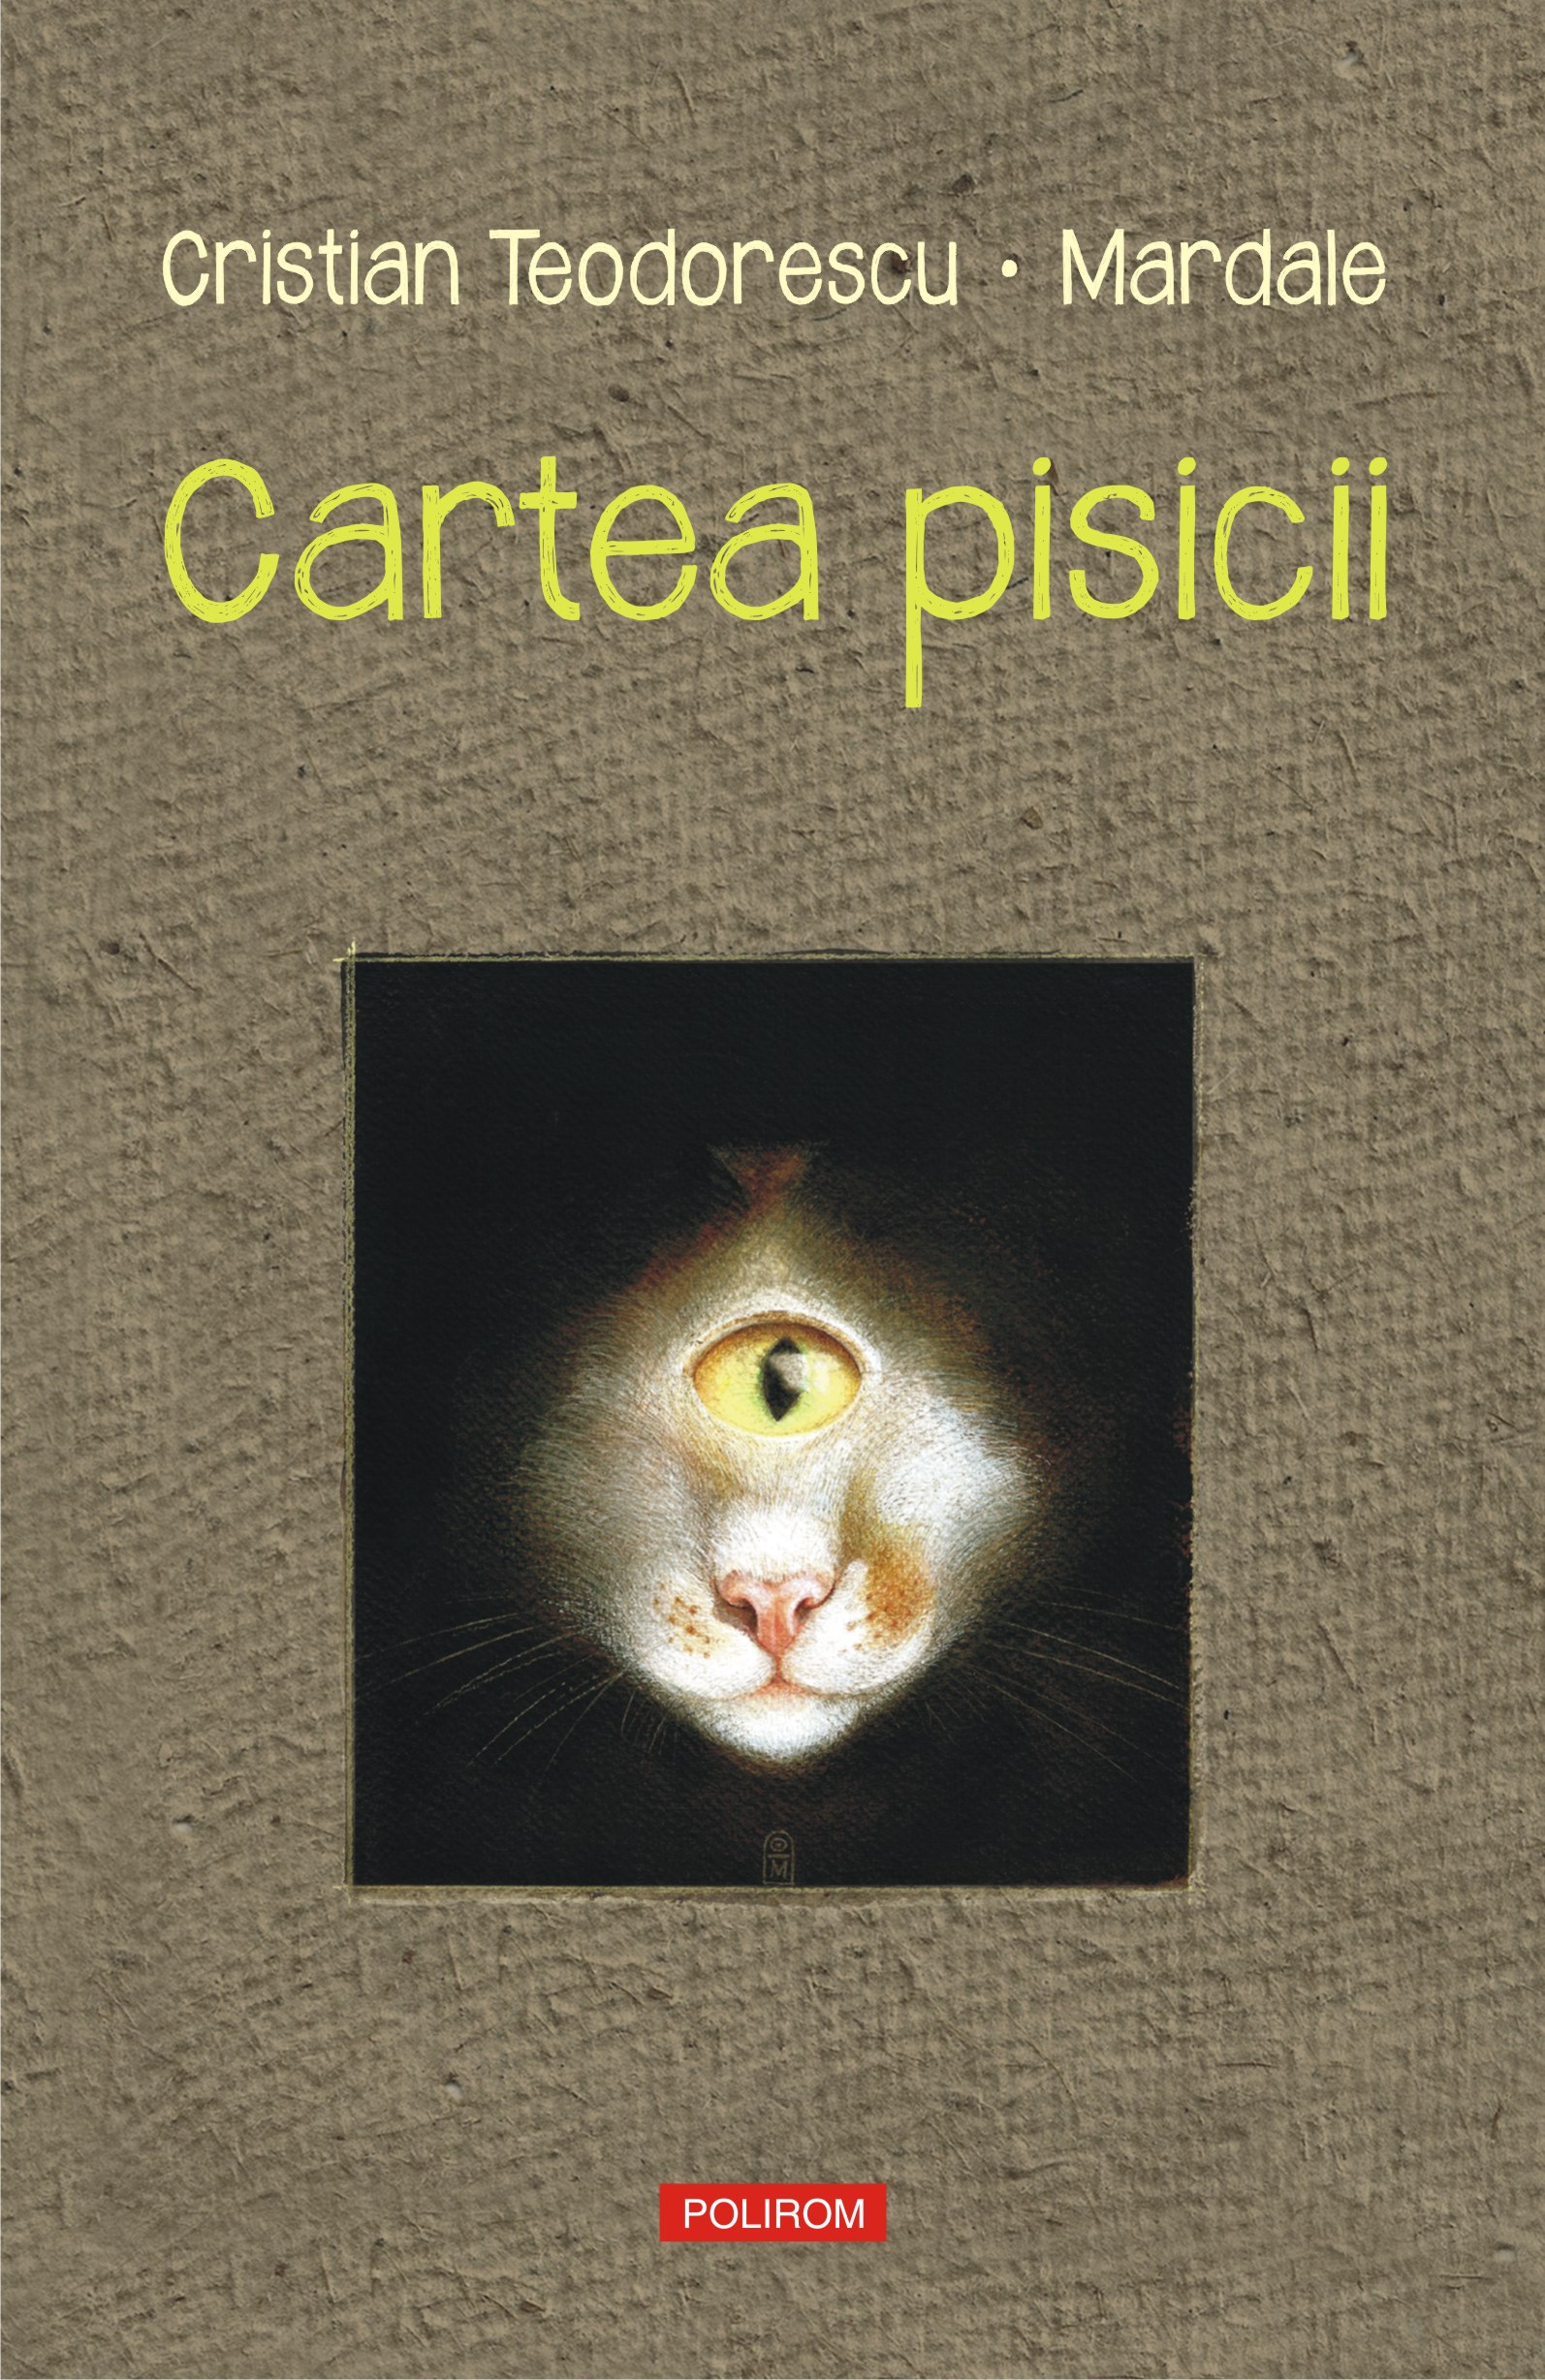 eBook Cartea pisicii - Cristian Teodorescu